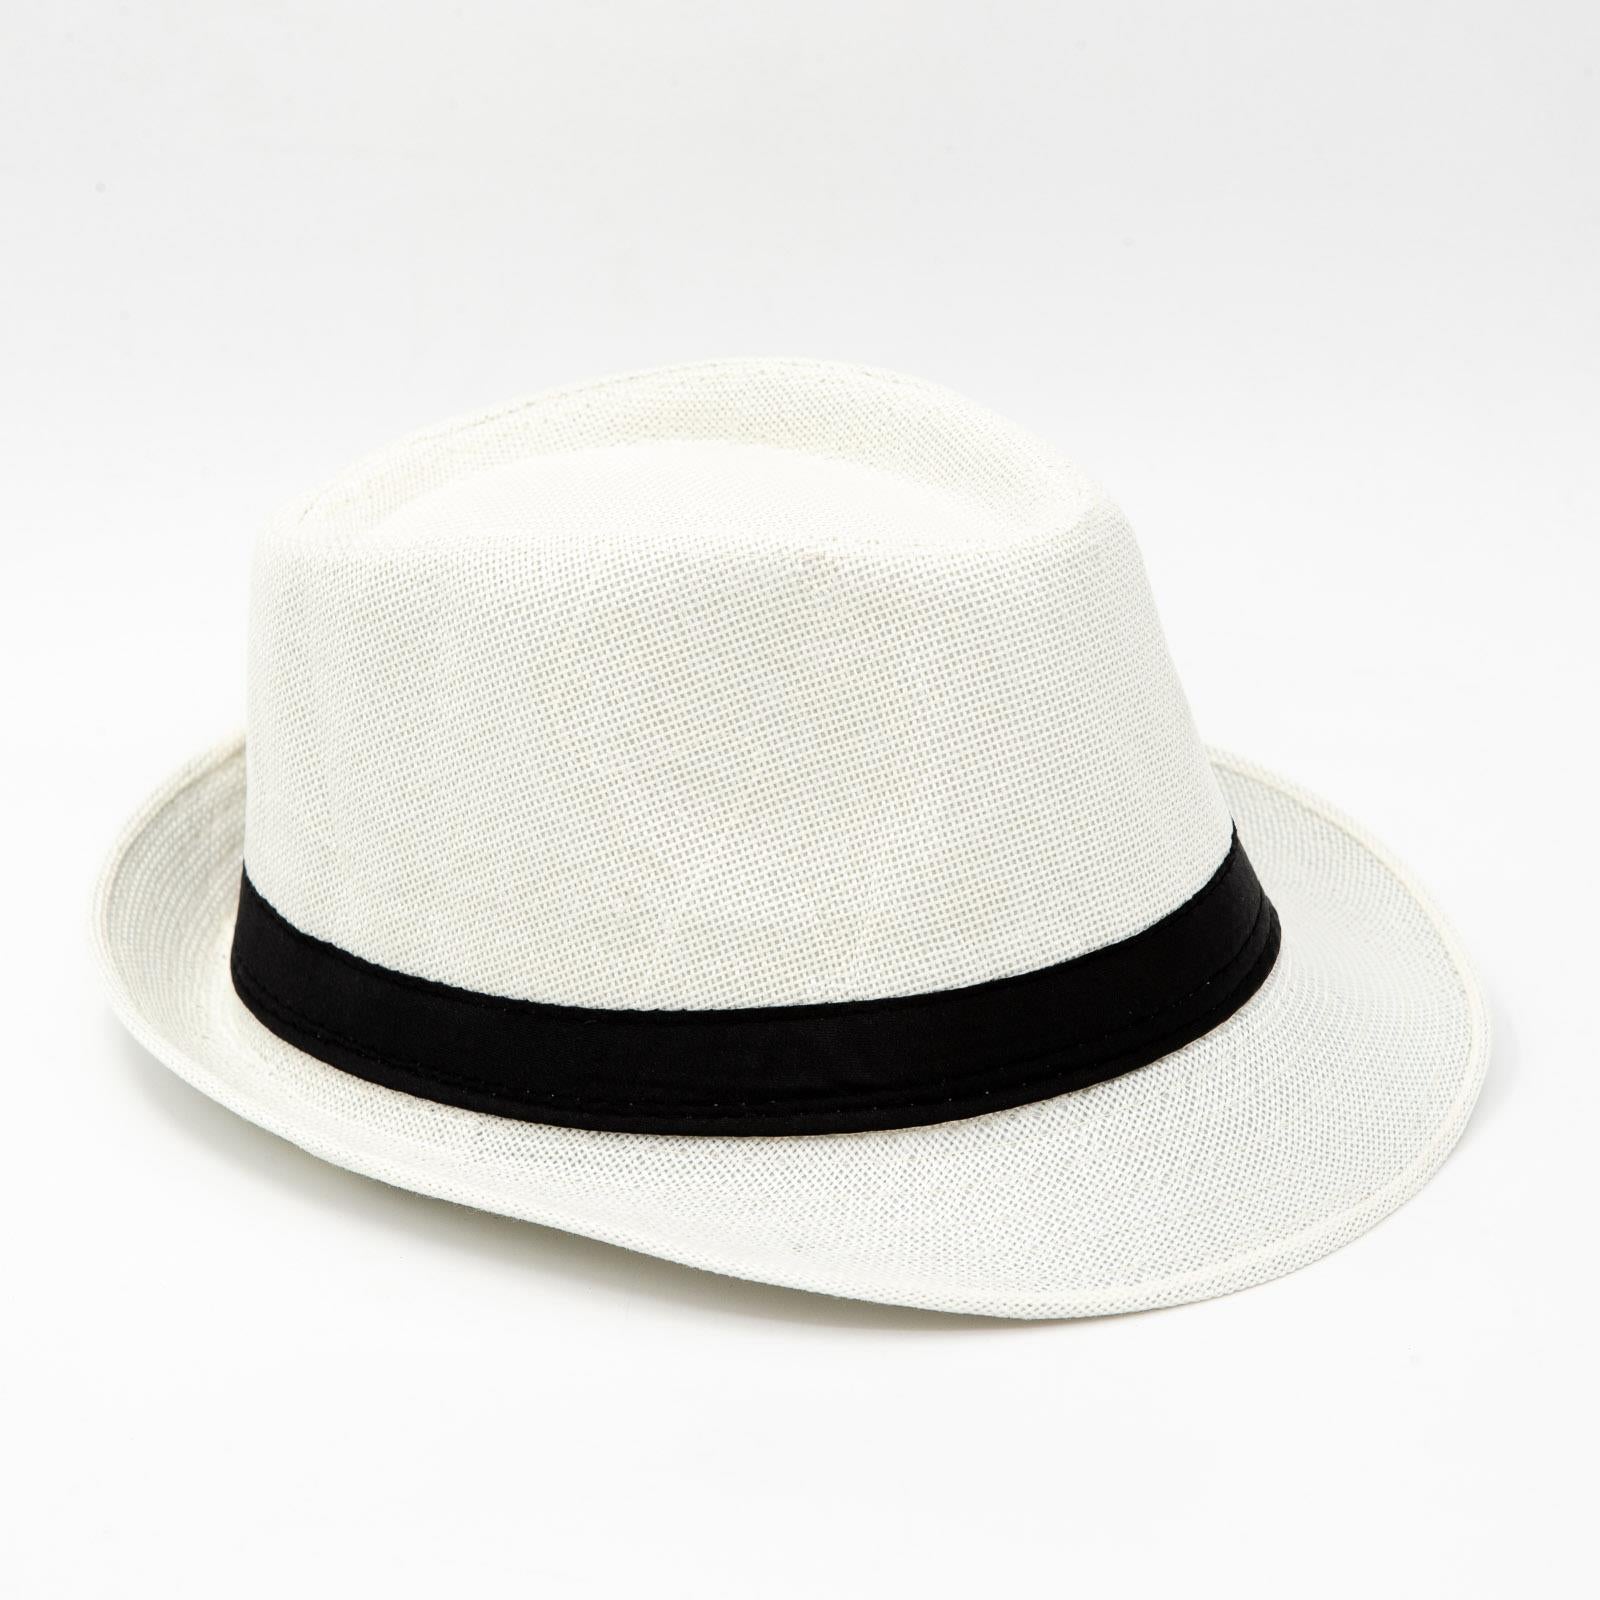 Classic Fedora White Hat Short Brim - Pantsnsox